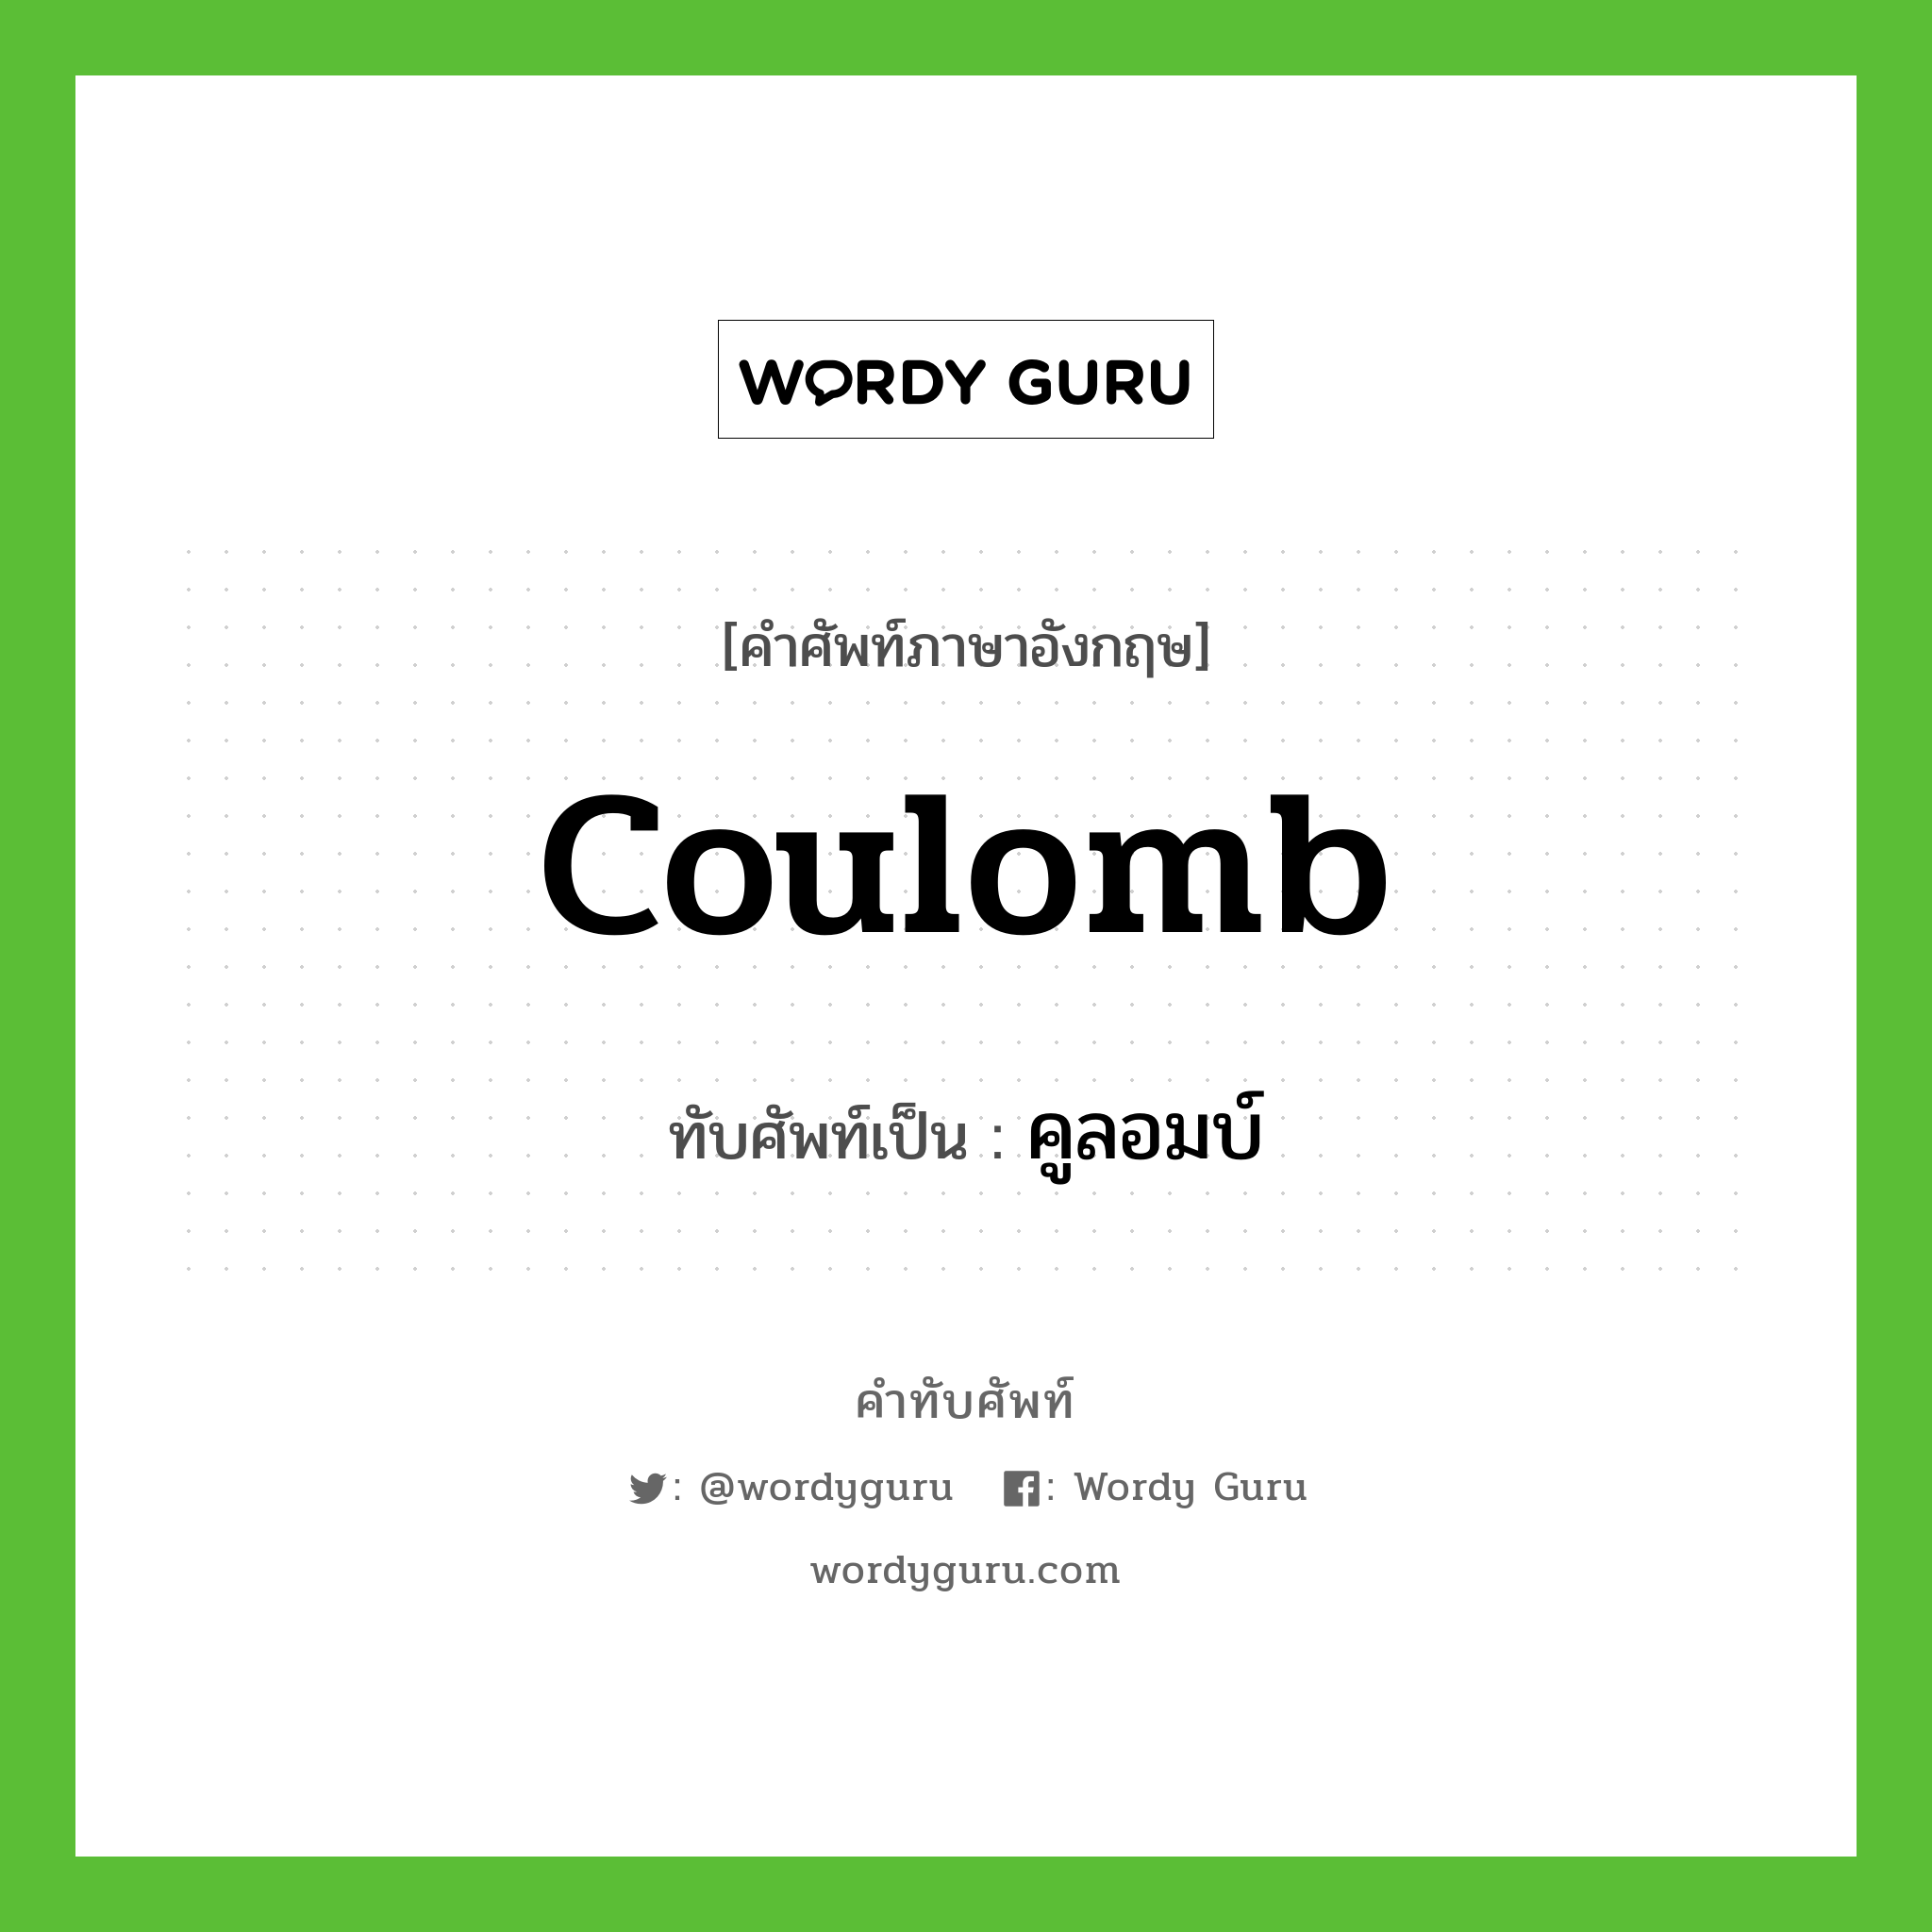 คูลอมบ์ เขียนอย่างไร?, คำศัพท์ภาษาอังกฤษ คูลอมบ์ ทับศัพท์เป็น coulomb